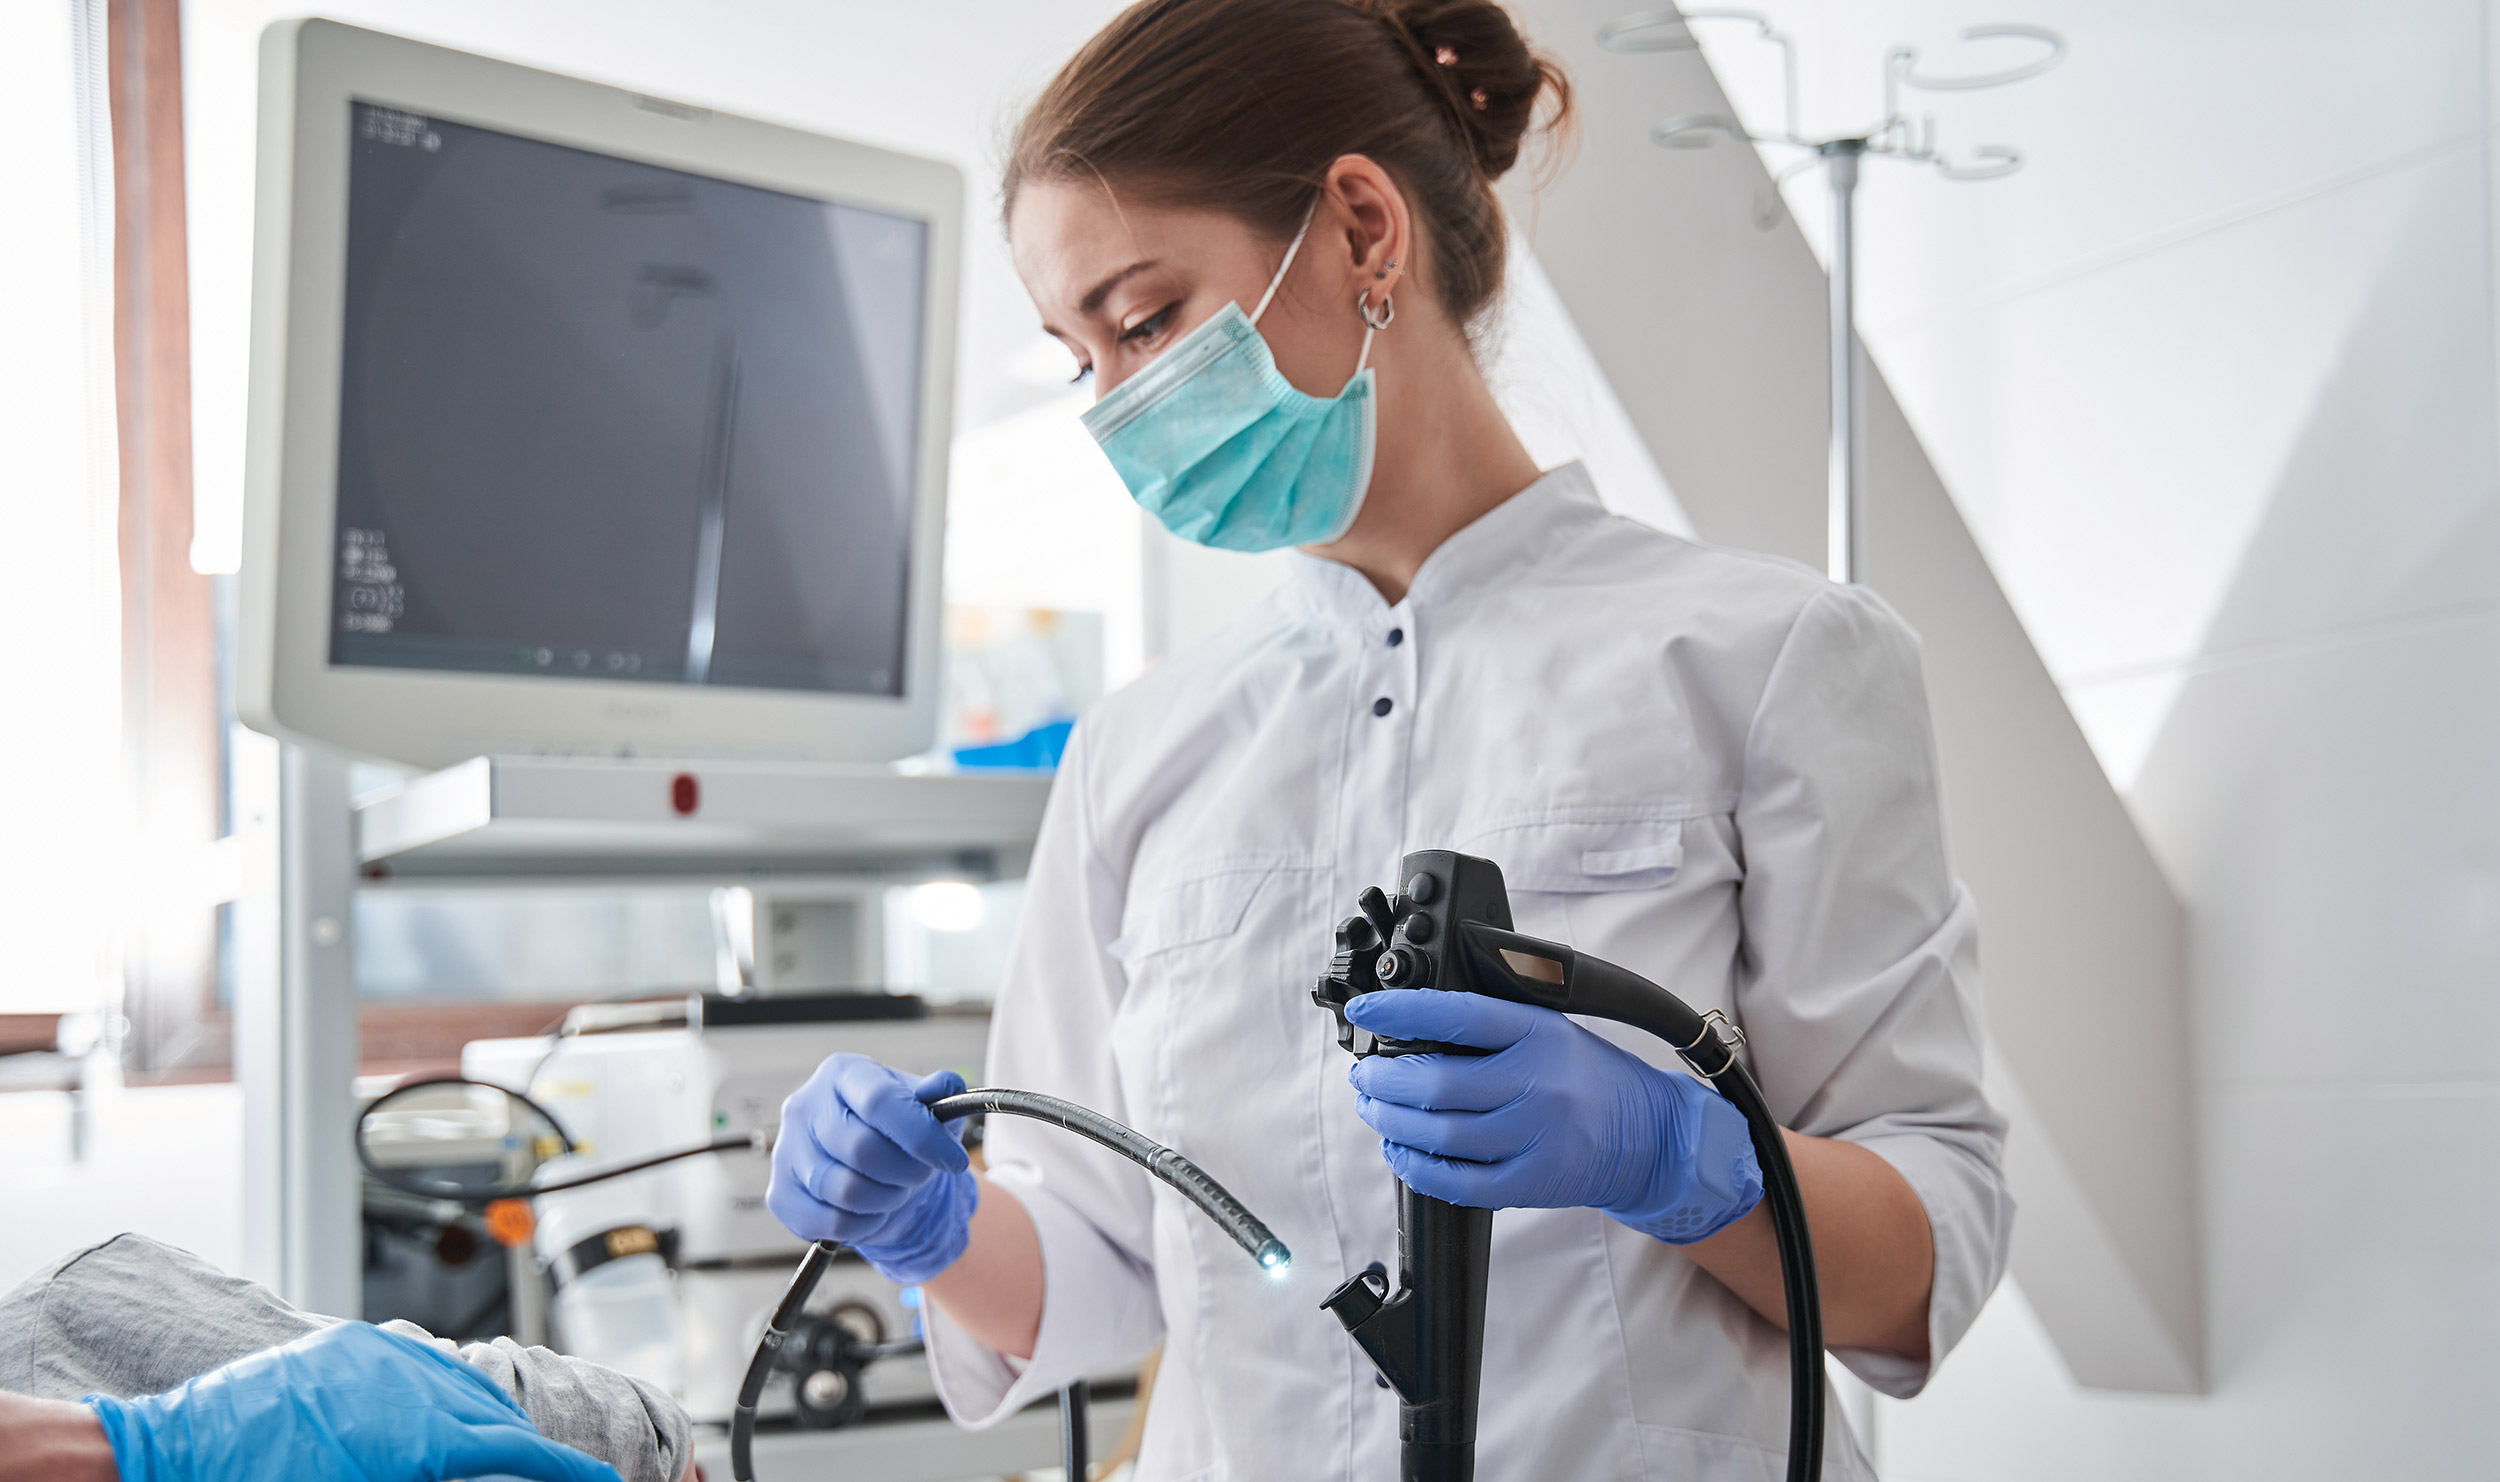 Women face unique ergonomic challenges in endoscopy.